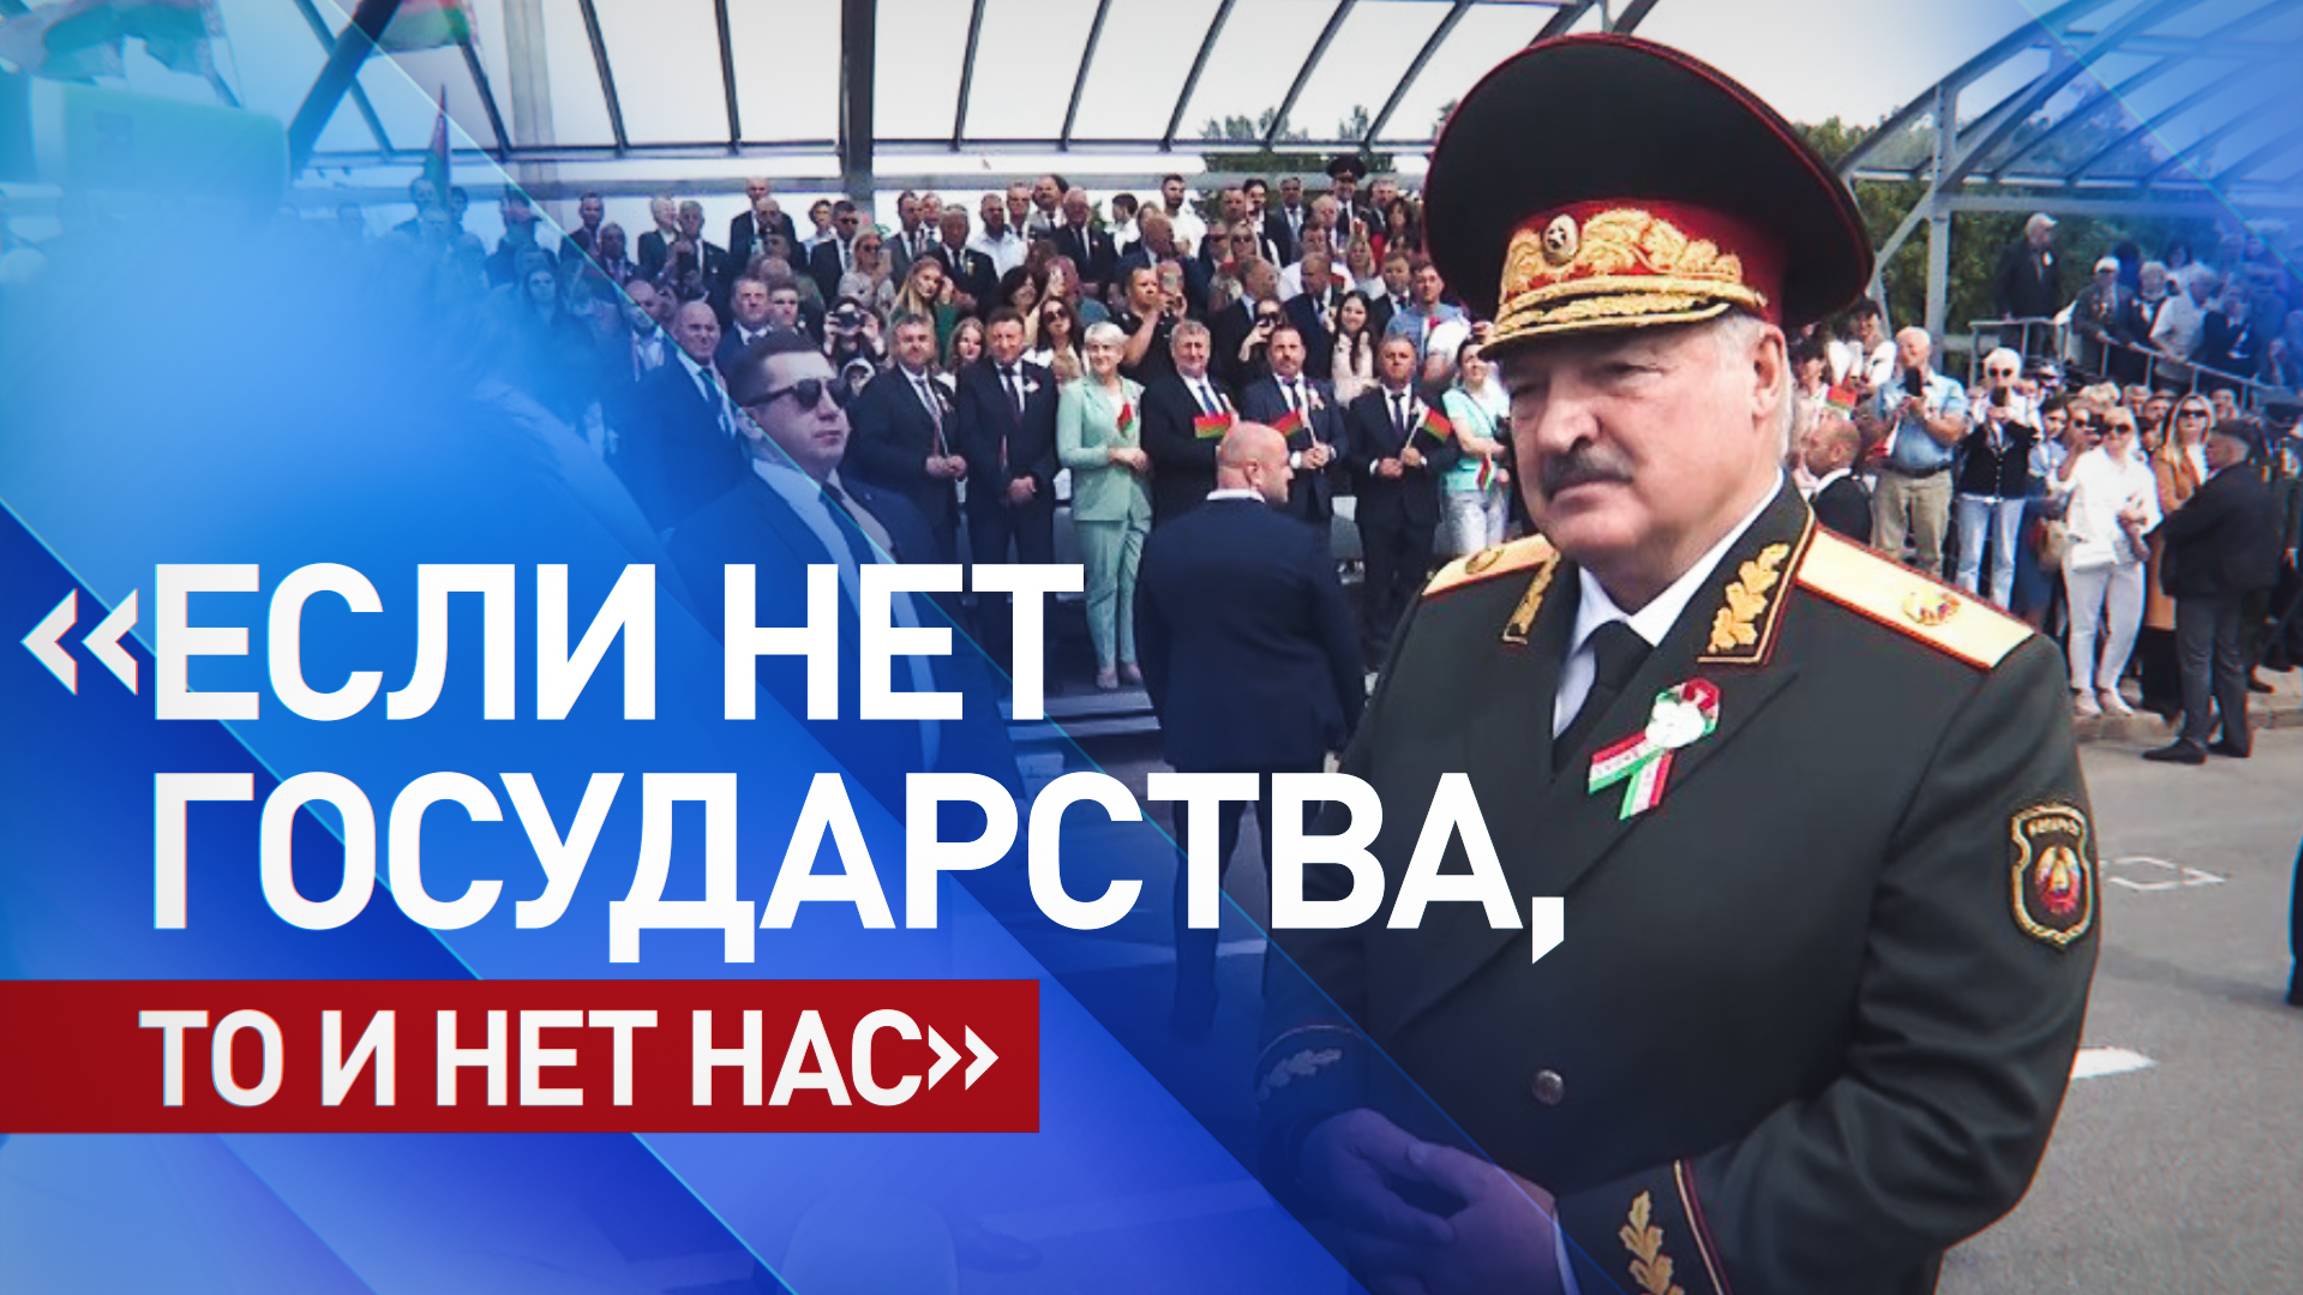 «Единые ценности, замыслы, цели»: Лукашенко — о том, что объединяет Россию и Белоруссию